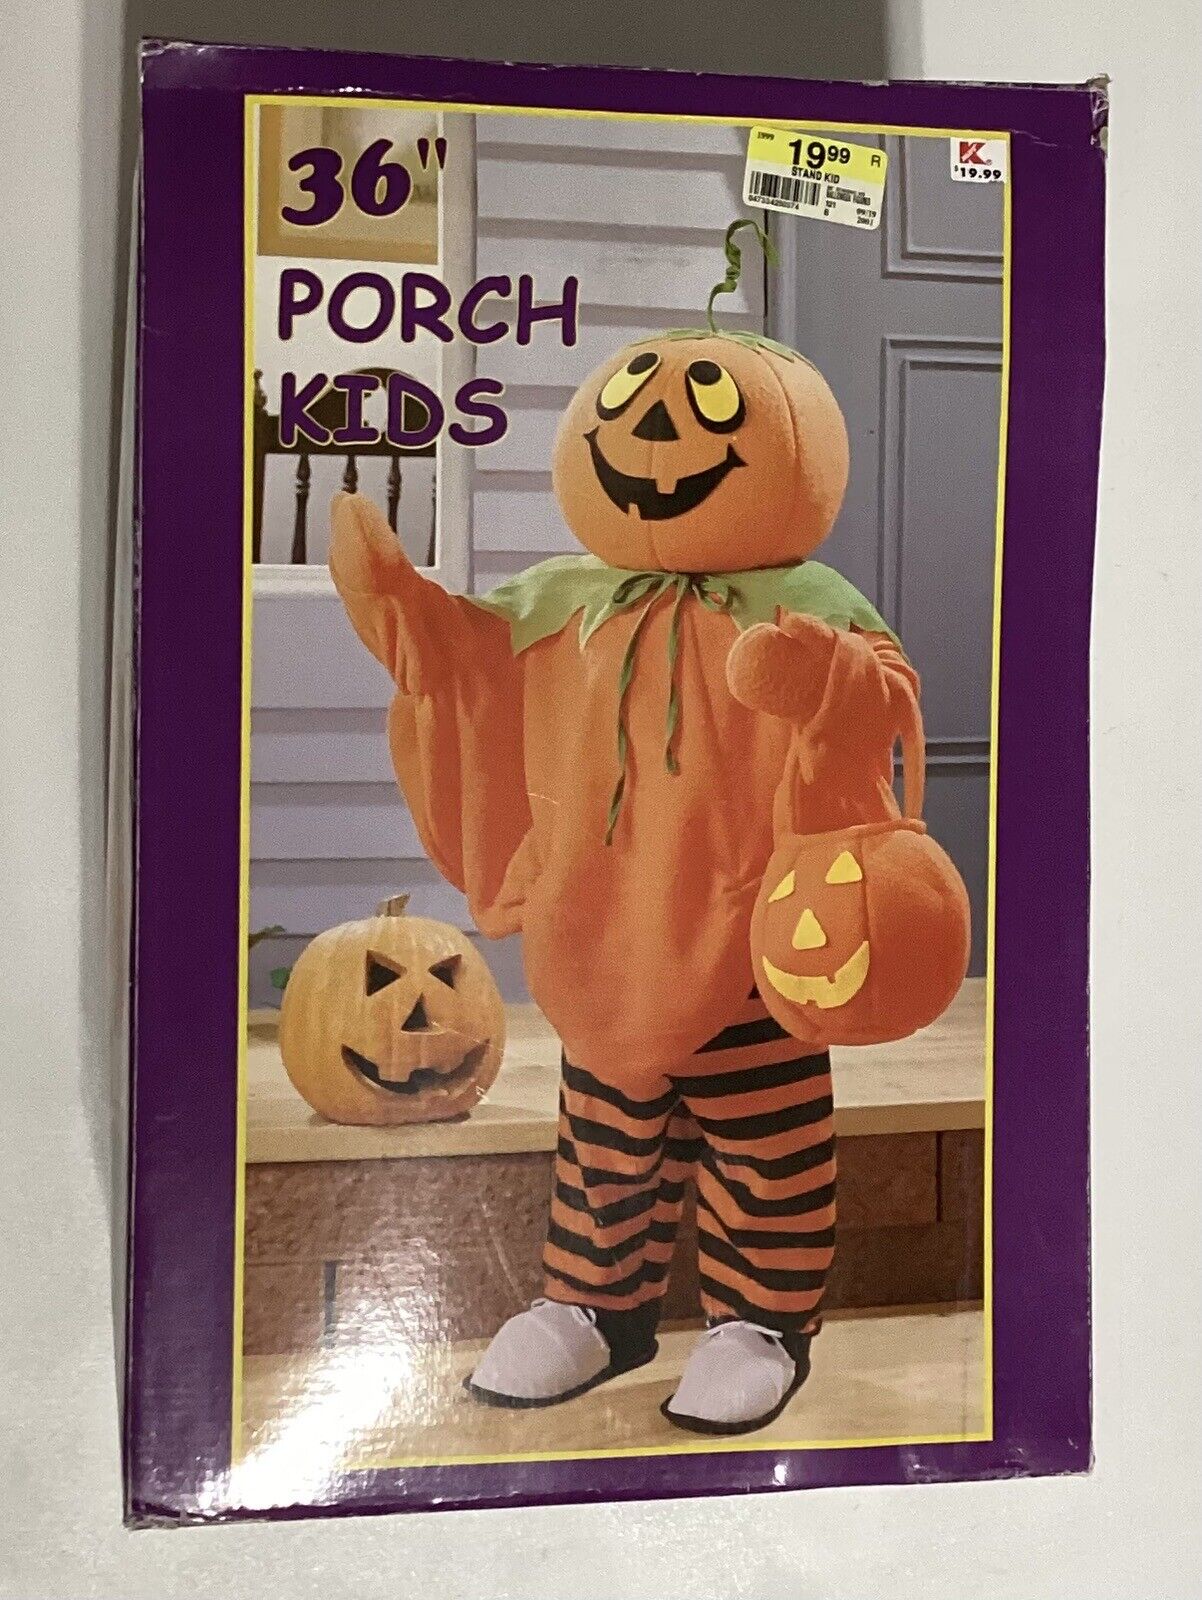 Vintage Halloween 36” Porch Kids Door Greeter  Pumpkin Outdoor Open Box